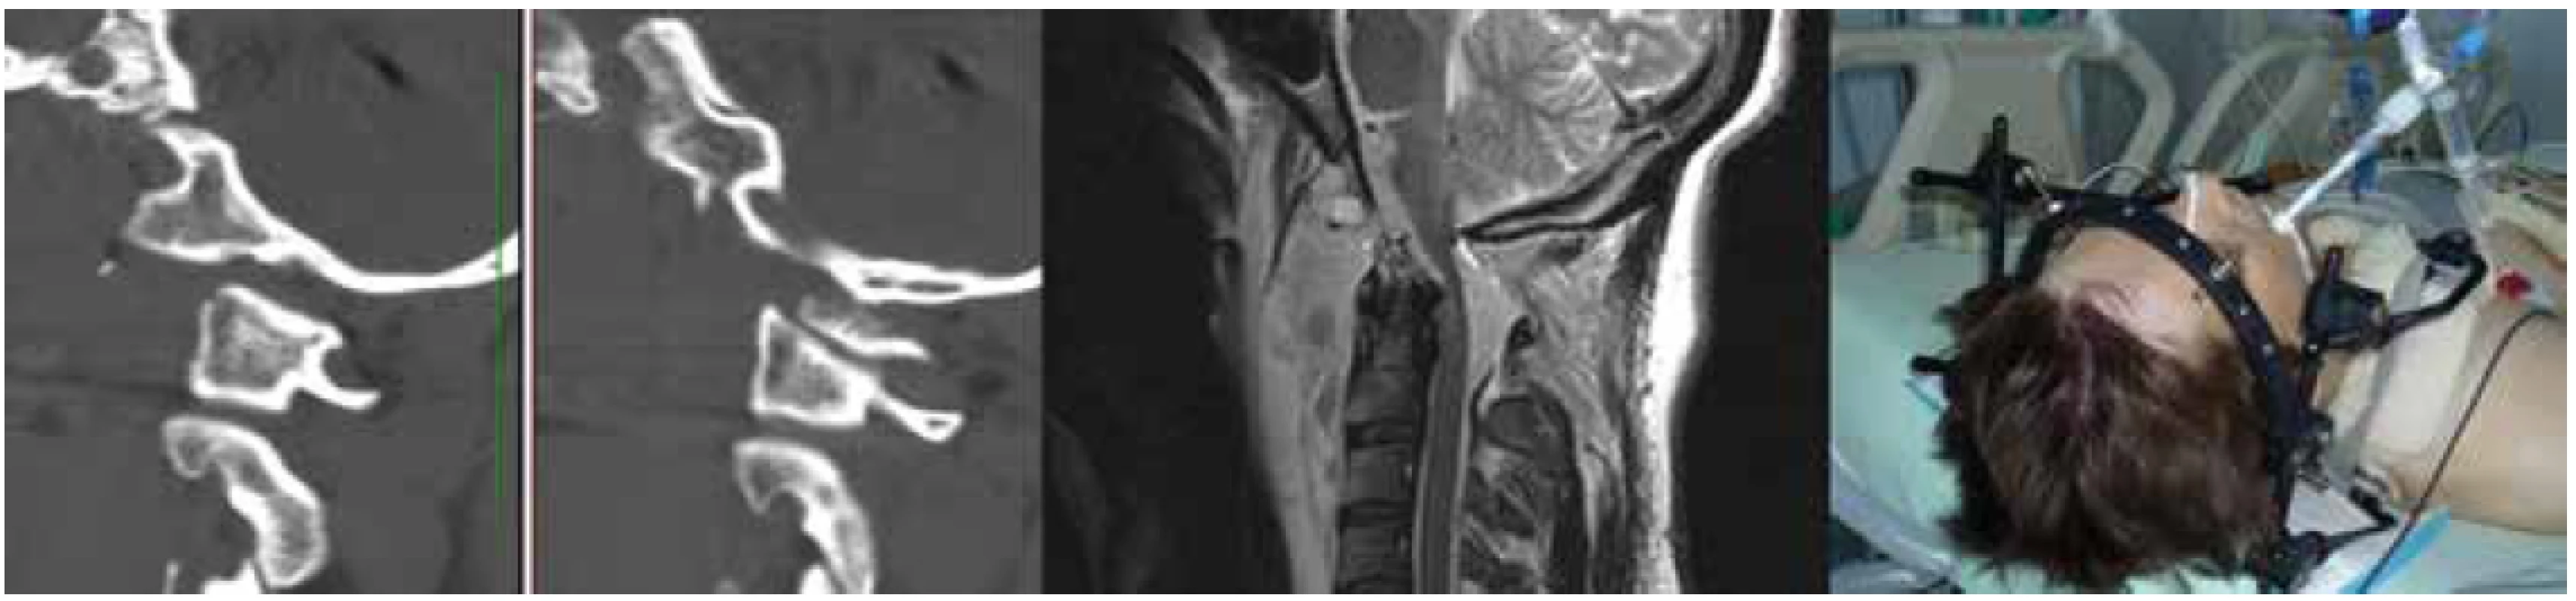 Pacient po úspěšné resuscitaci s kmenovou areflexií a korelujícím nálezem na MRI řešený konzervativně externí
halo fixací<br>
Na CT je patrná avulze okcipitálního kondylu.<br>
Fig. 2. A patient after successful CPR with brainstem areflexia and a graphic correlate on MRI, treated conservatively using
an external halo fixation<br>
Occipital condyle avulsion is shown on the CT scan.